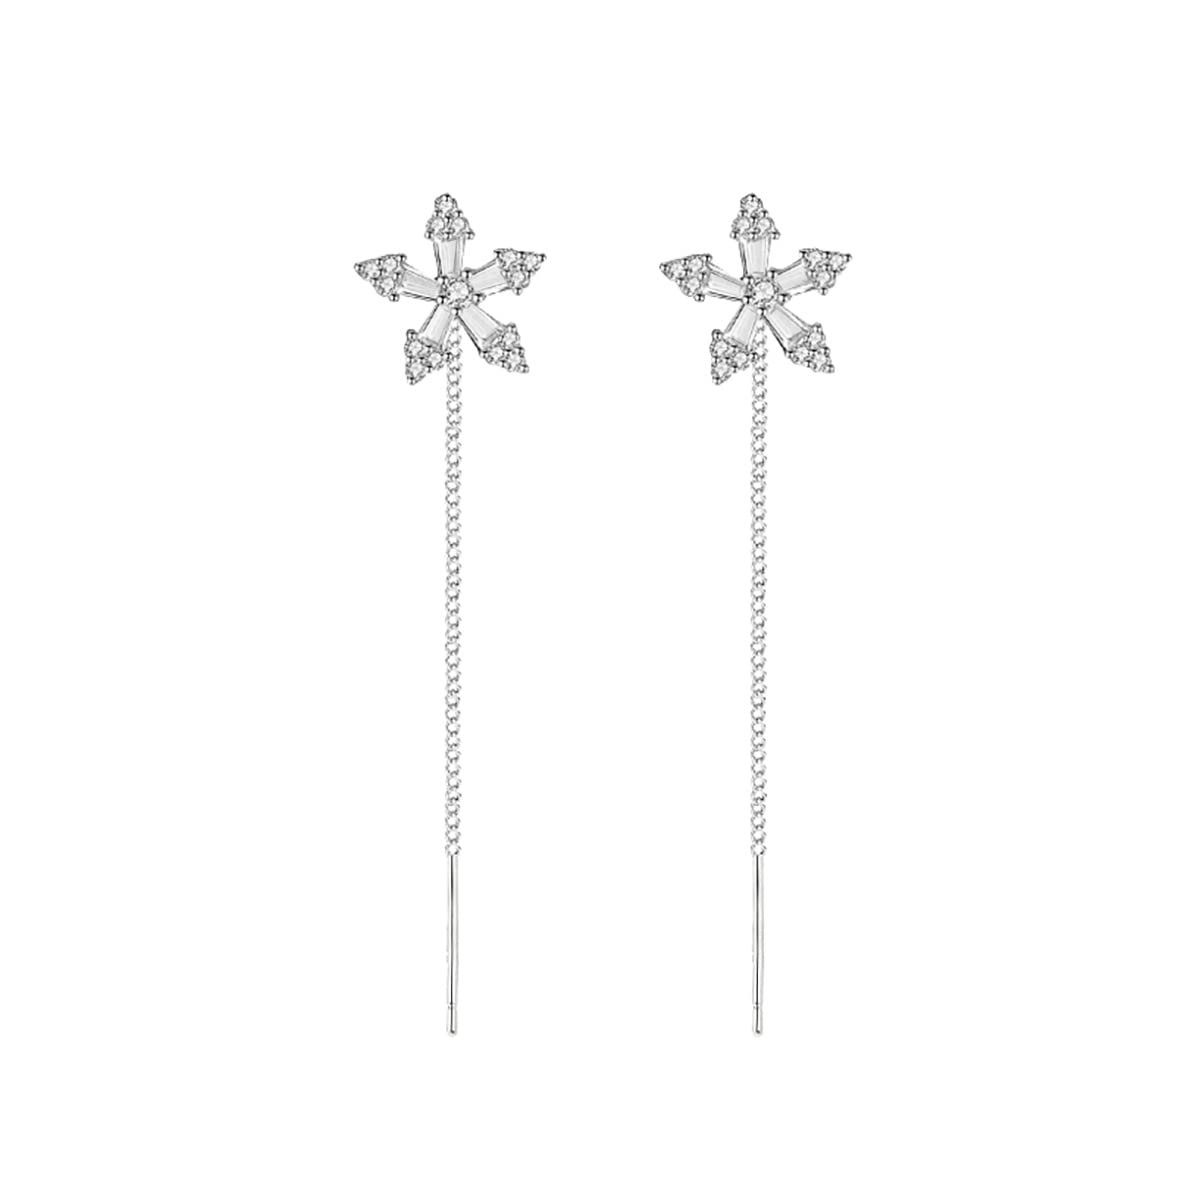 POCHUMIDUU Paar Ohrhänger 925 Sterling Silber CZ Blumenbaum Ohrringe Kette (2-tlg., Schneeflocke Blume Dangling Ohrringe Einfädelquaste), für Frauen Teenager Mädchen silbrig